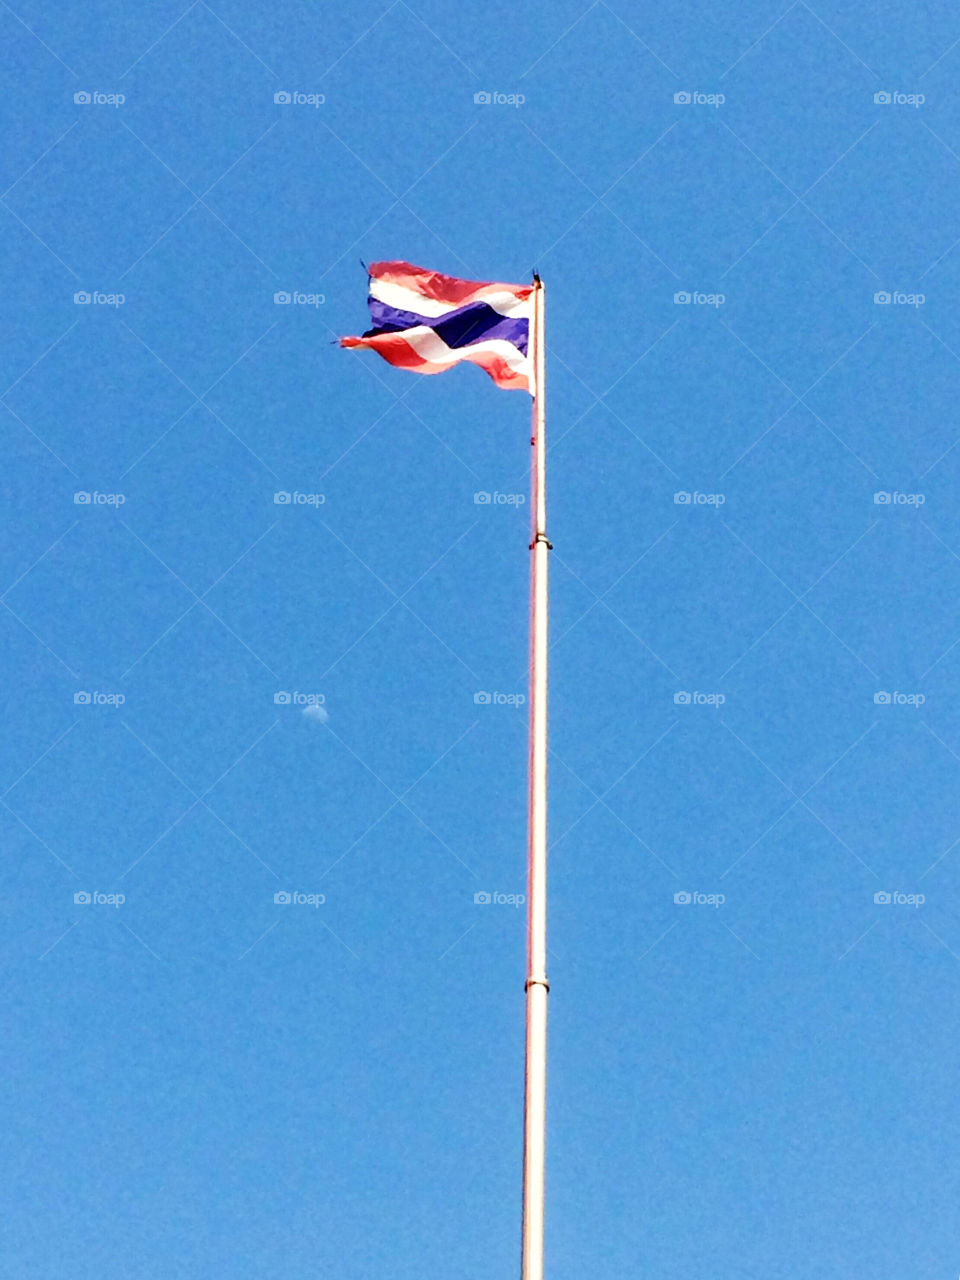 Thailand's flag 